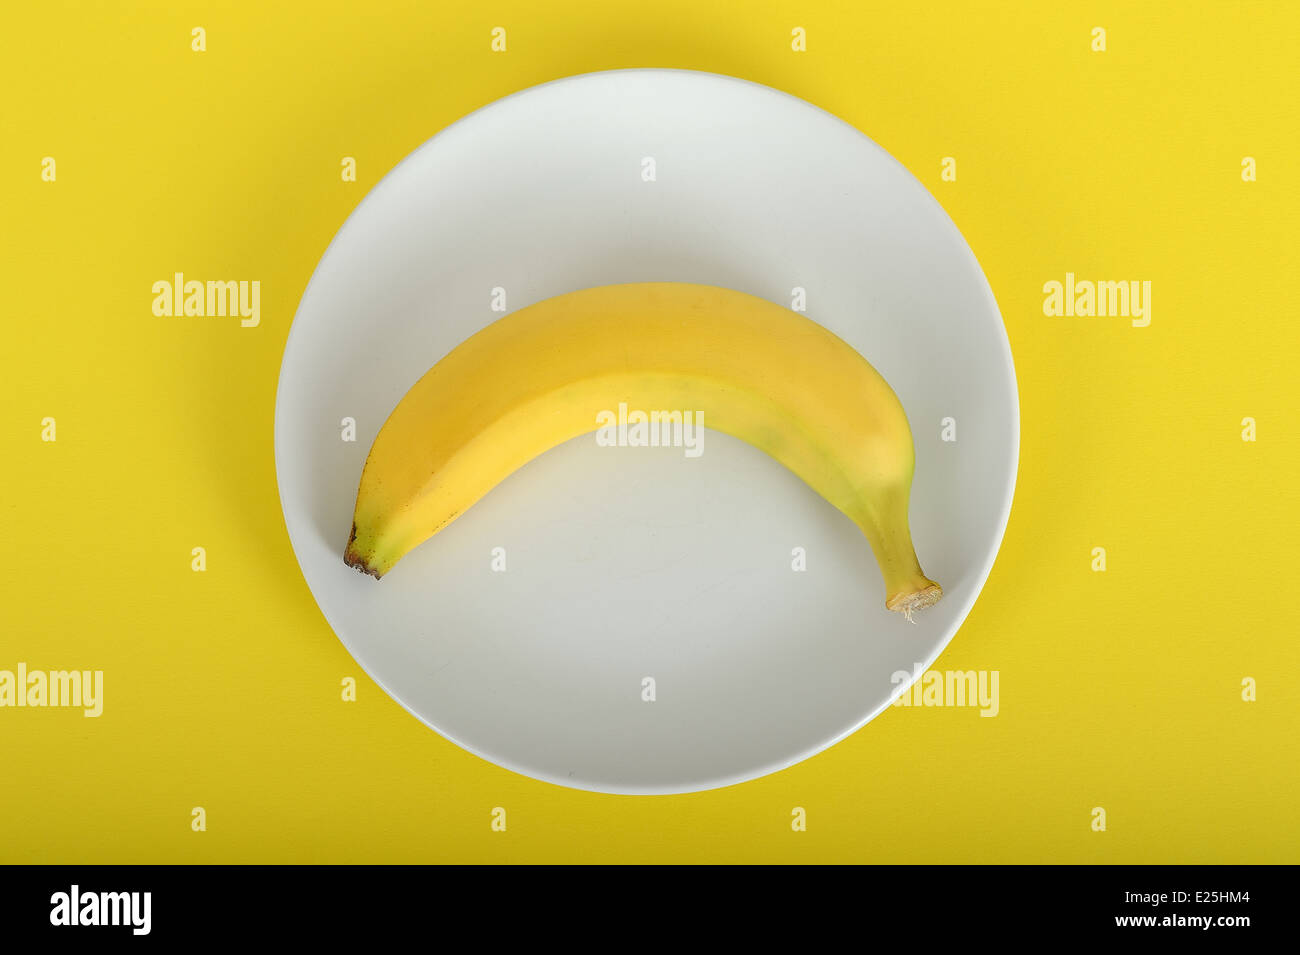 Single Banana Providing 100 Calories Stock Photo